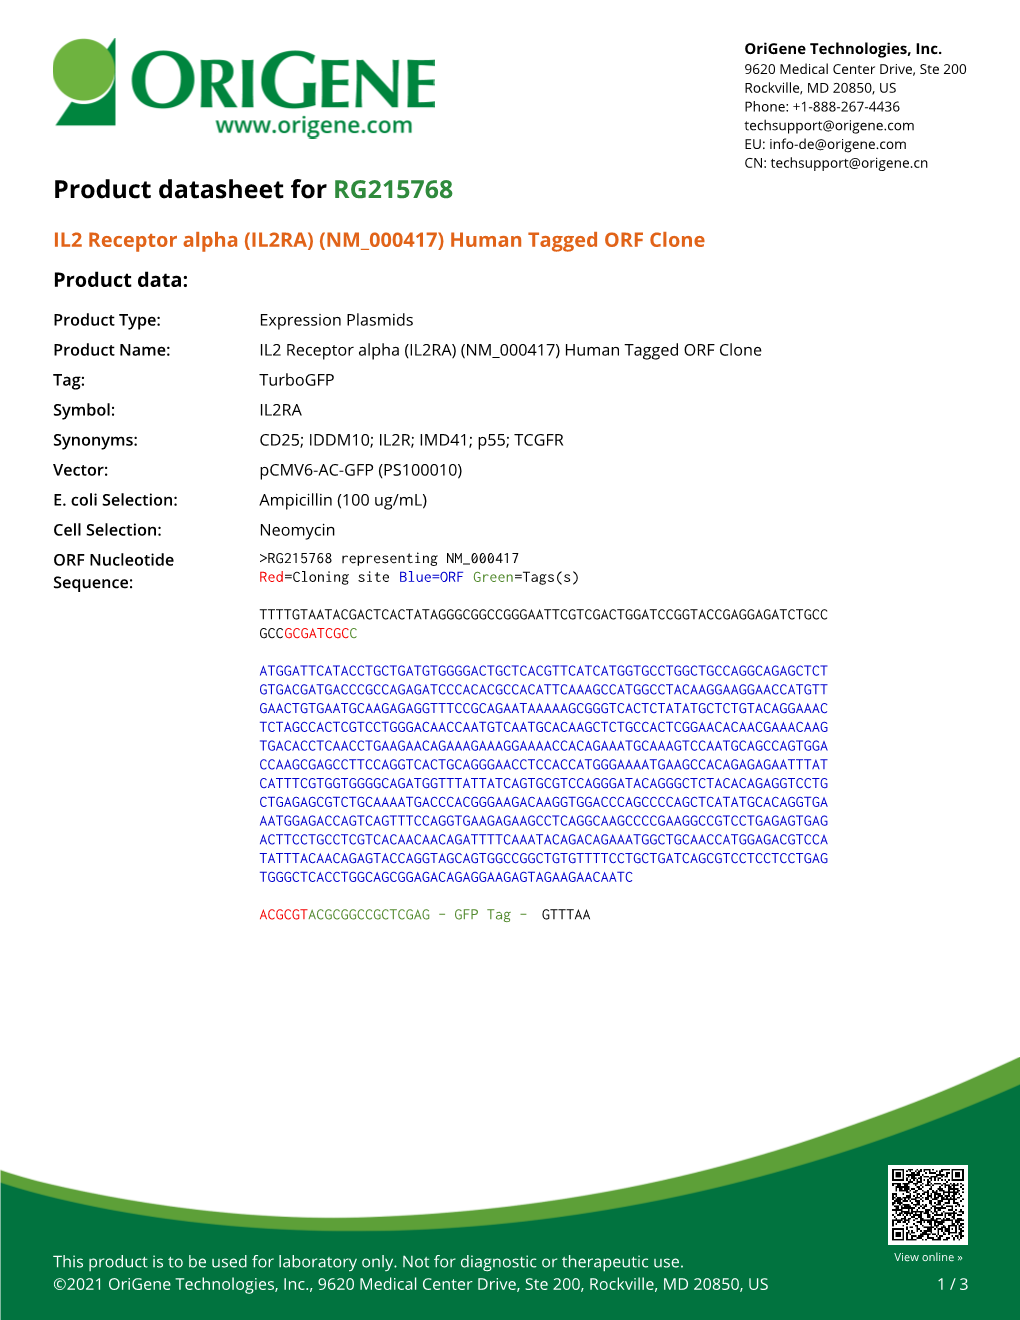 IL2 Receptor Alpha (IL2RA) (NM 000417) Human Tagged ORF Clone Product Data